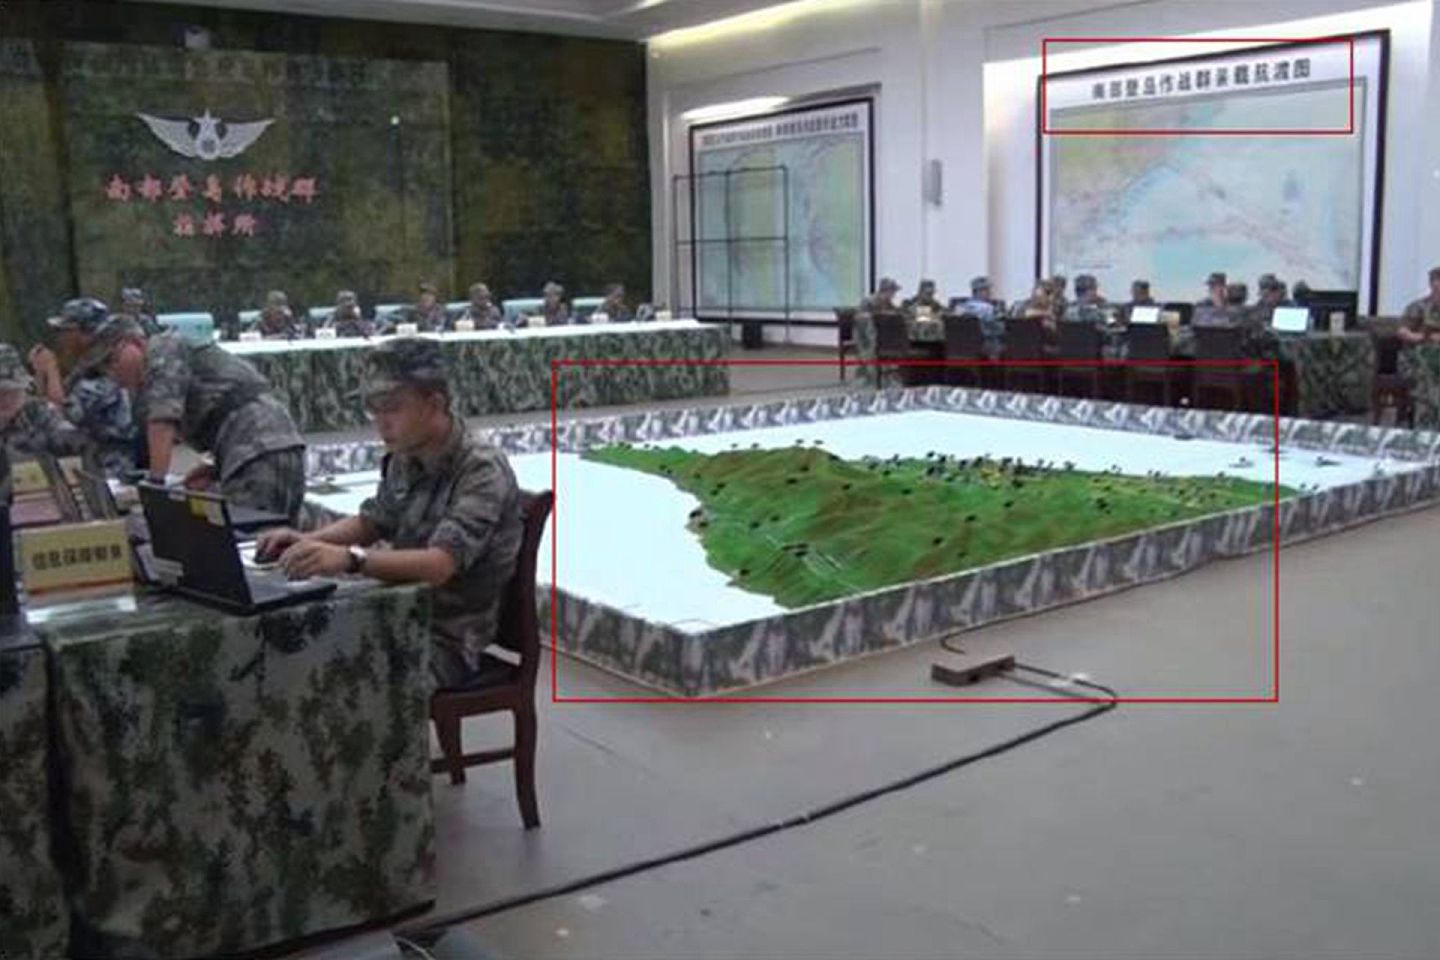 解放军内部披露的针对台湾的演习照。图中红框即为台湾地形沙盘。（中国央视截图）